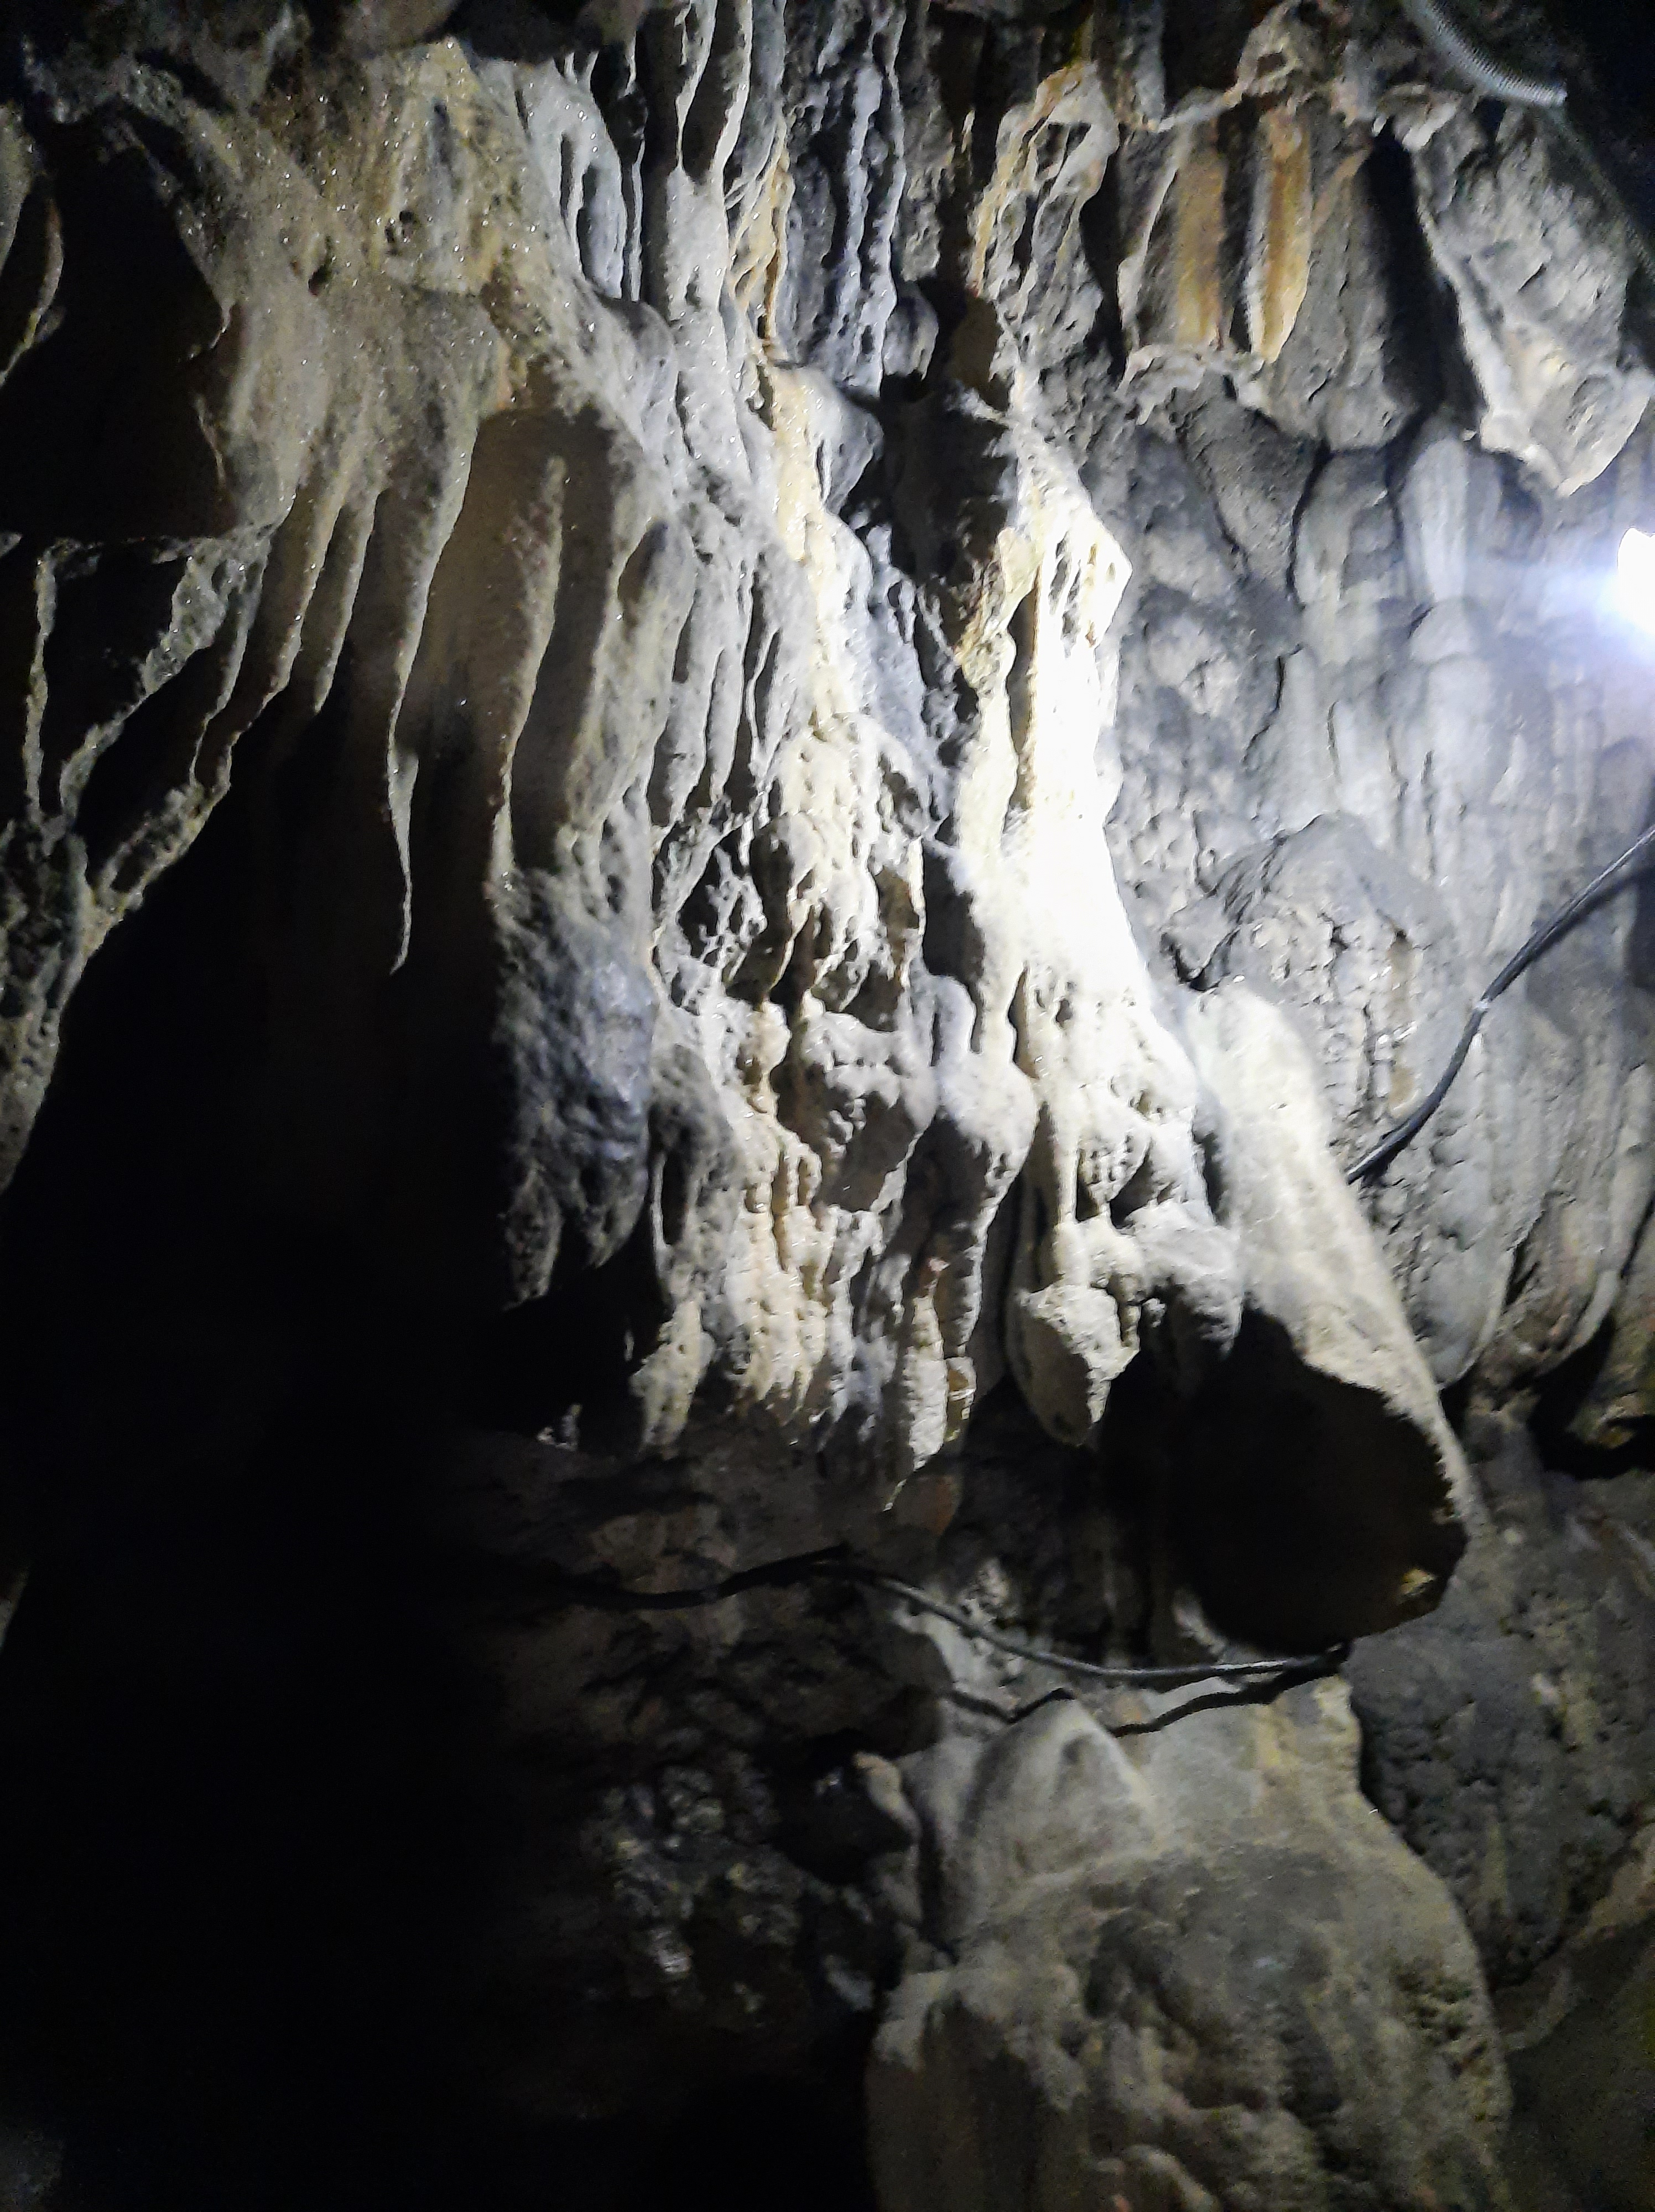 Mawsmai Caves